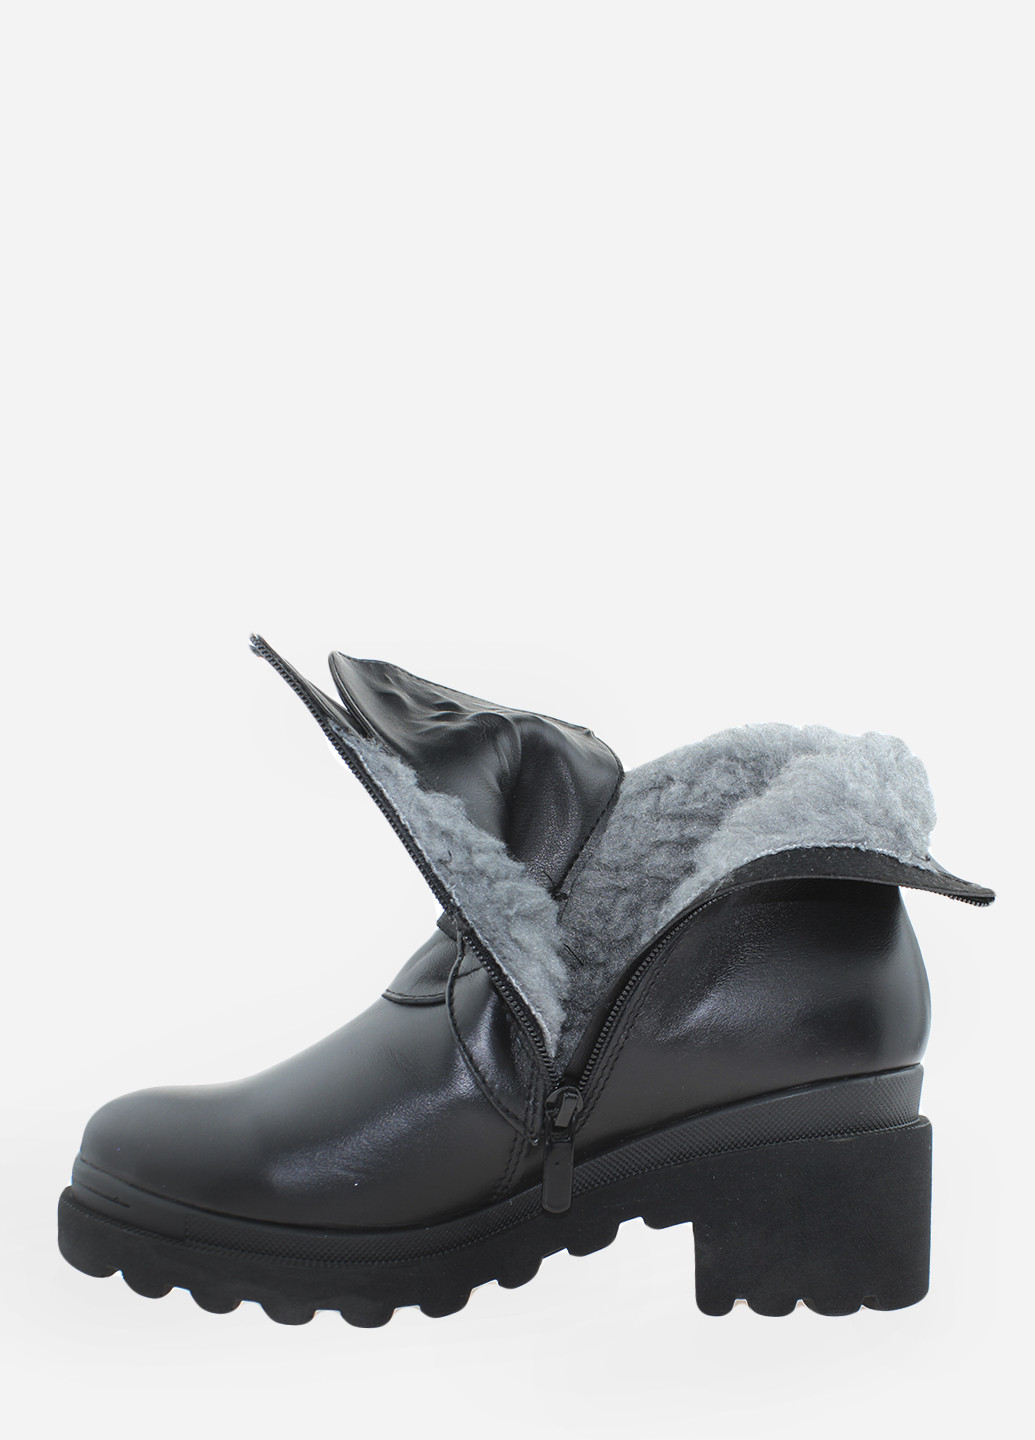 Зимние ботинки ra354 черный Alvista